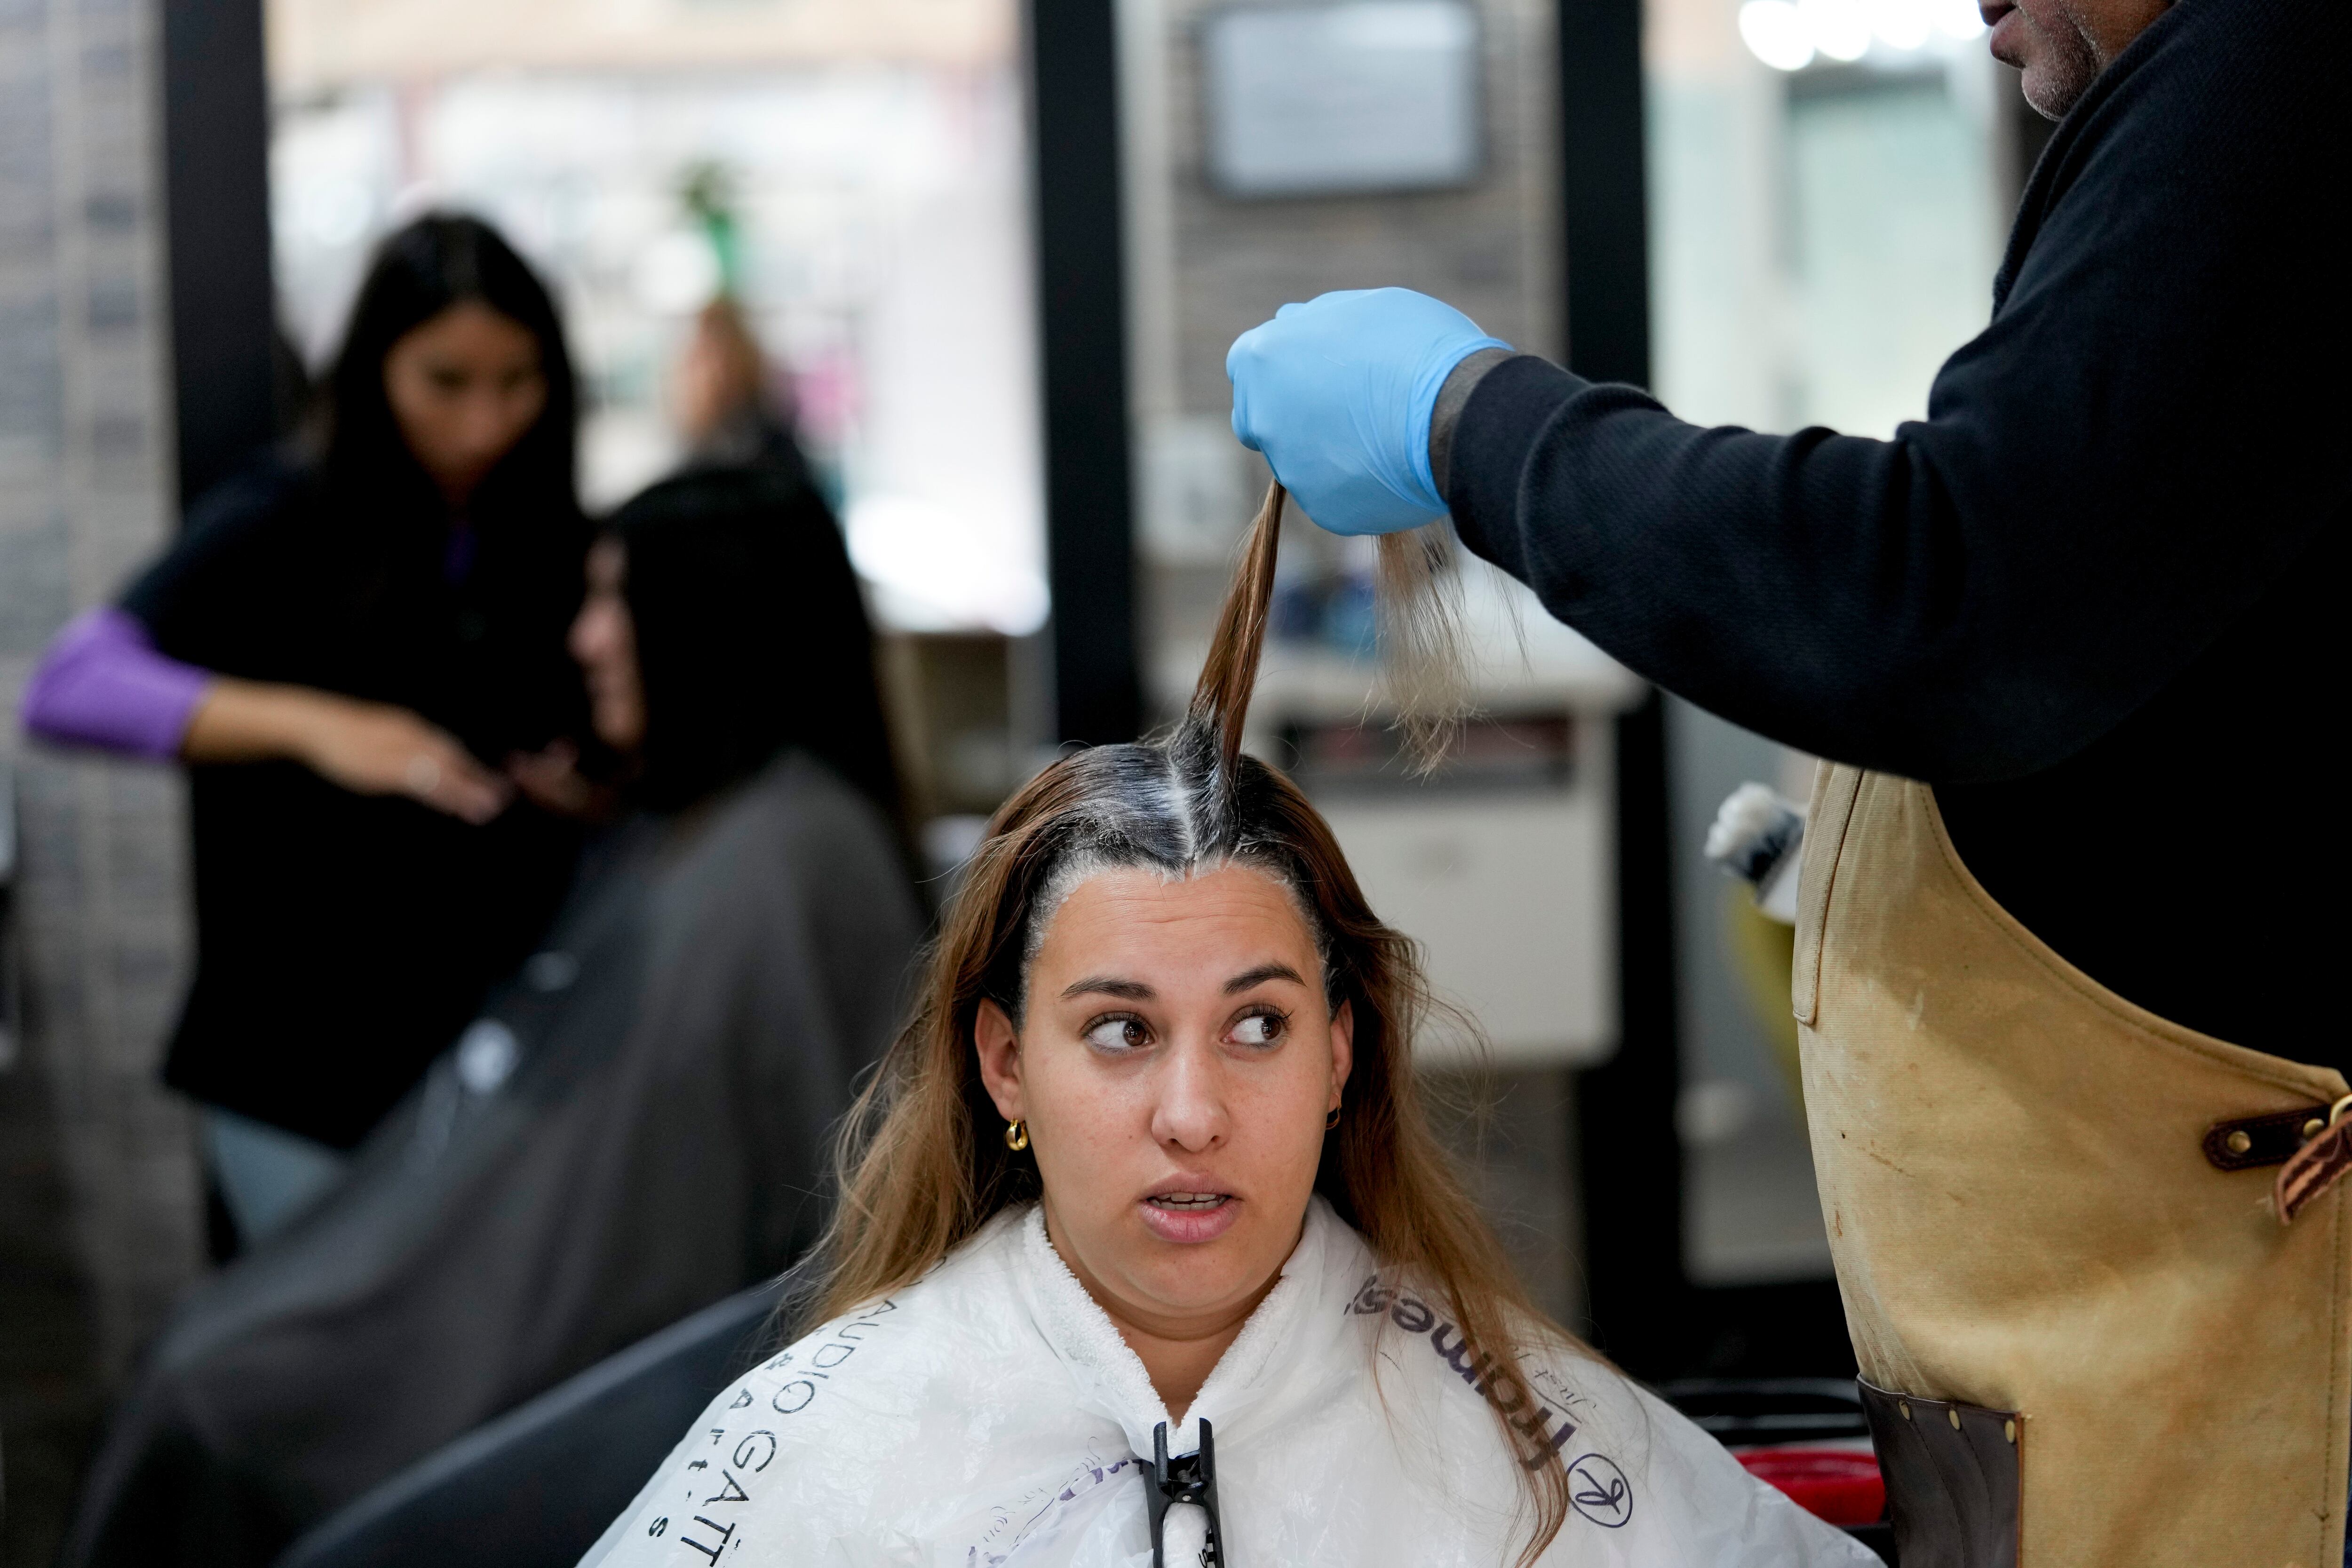 El tipo de trato que recibe el cabello puede afectar la caída de este. Si los comportamientos dañinos no cesan, la pérdida se puede volver permanente (AP Foto/Natacha Pisarenko)